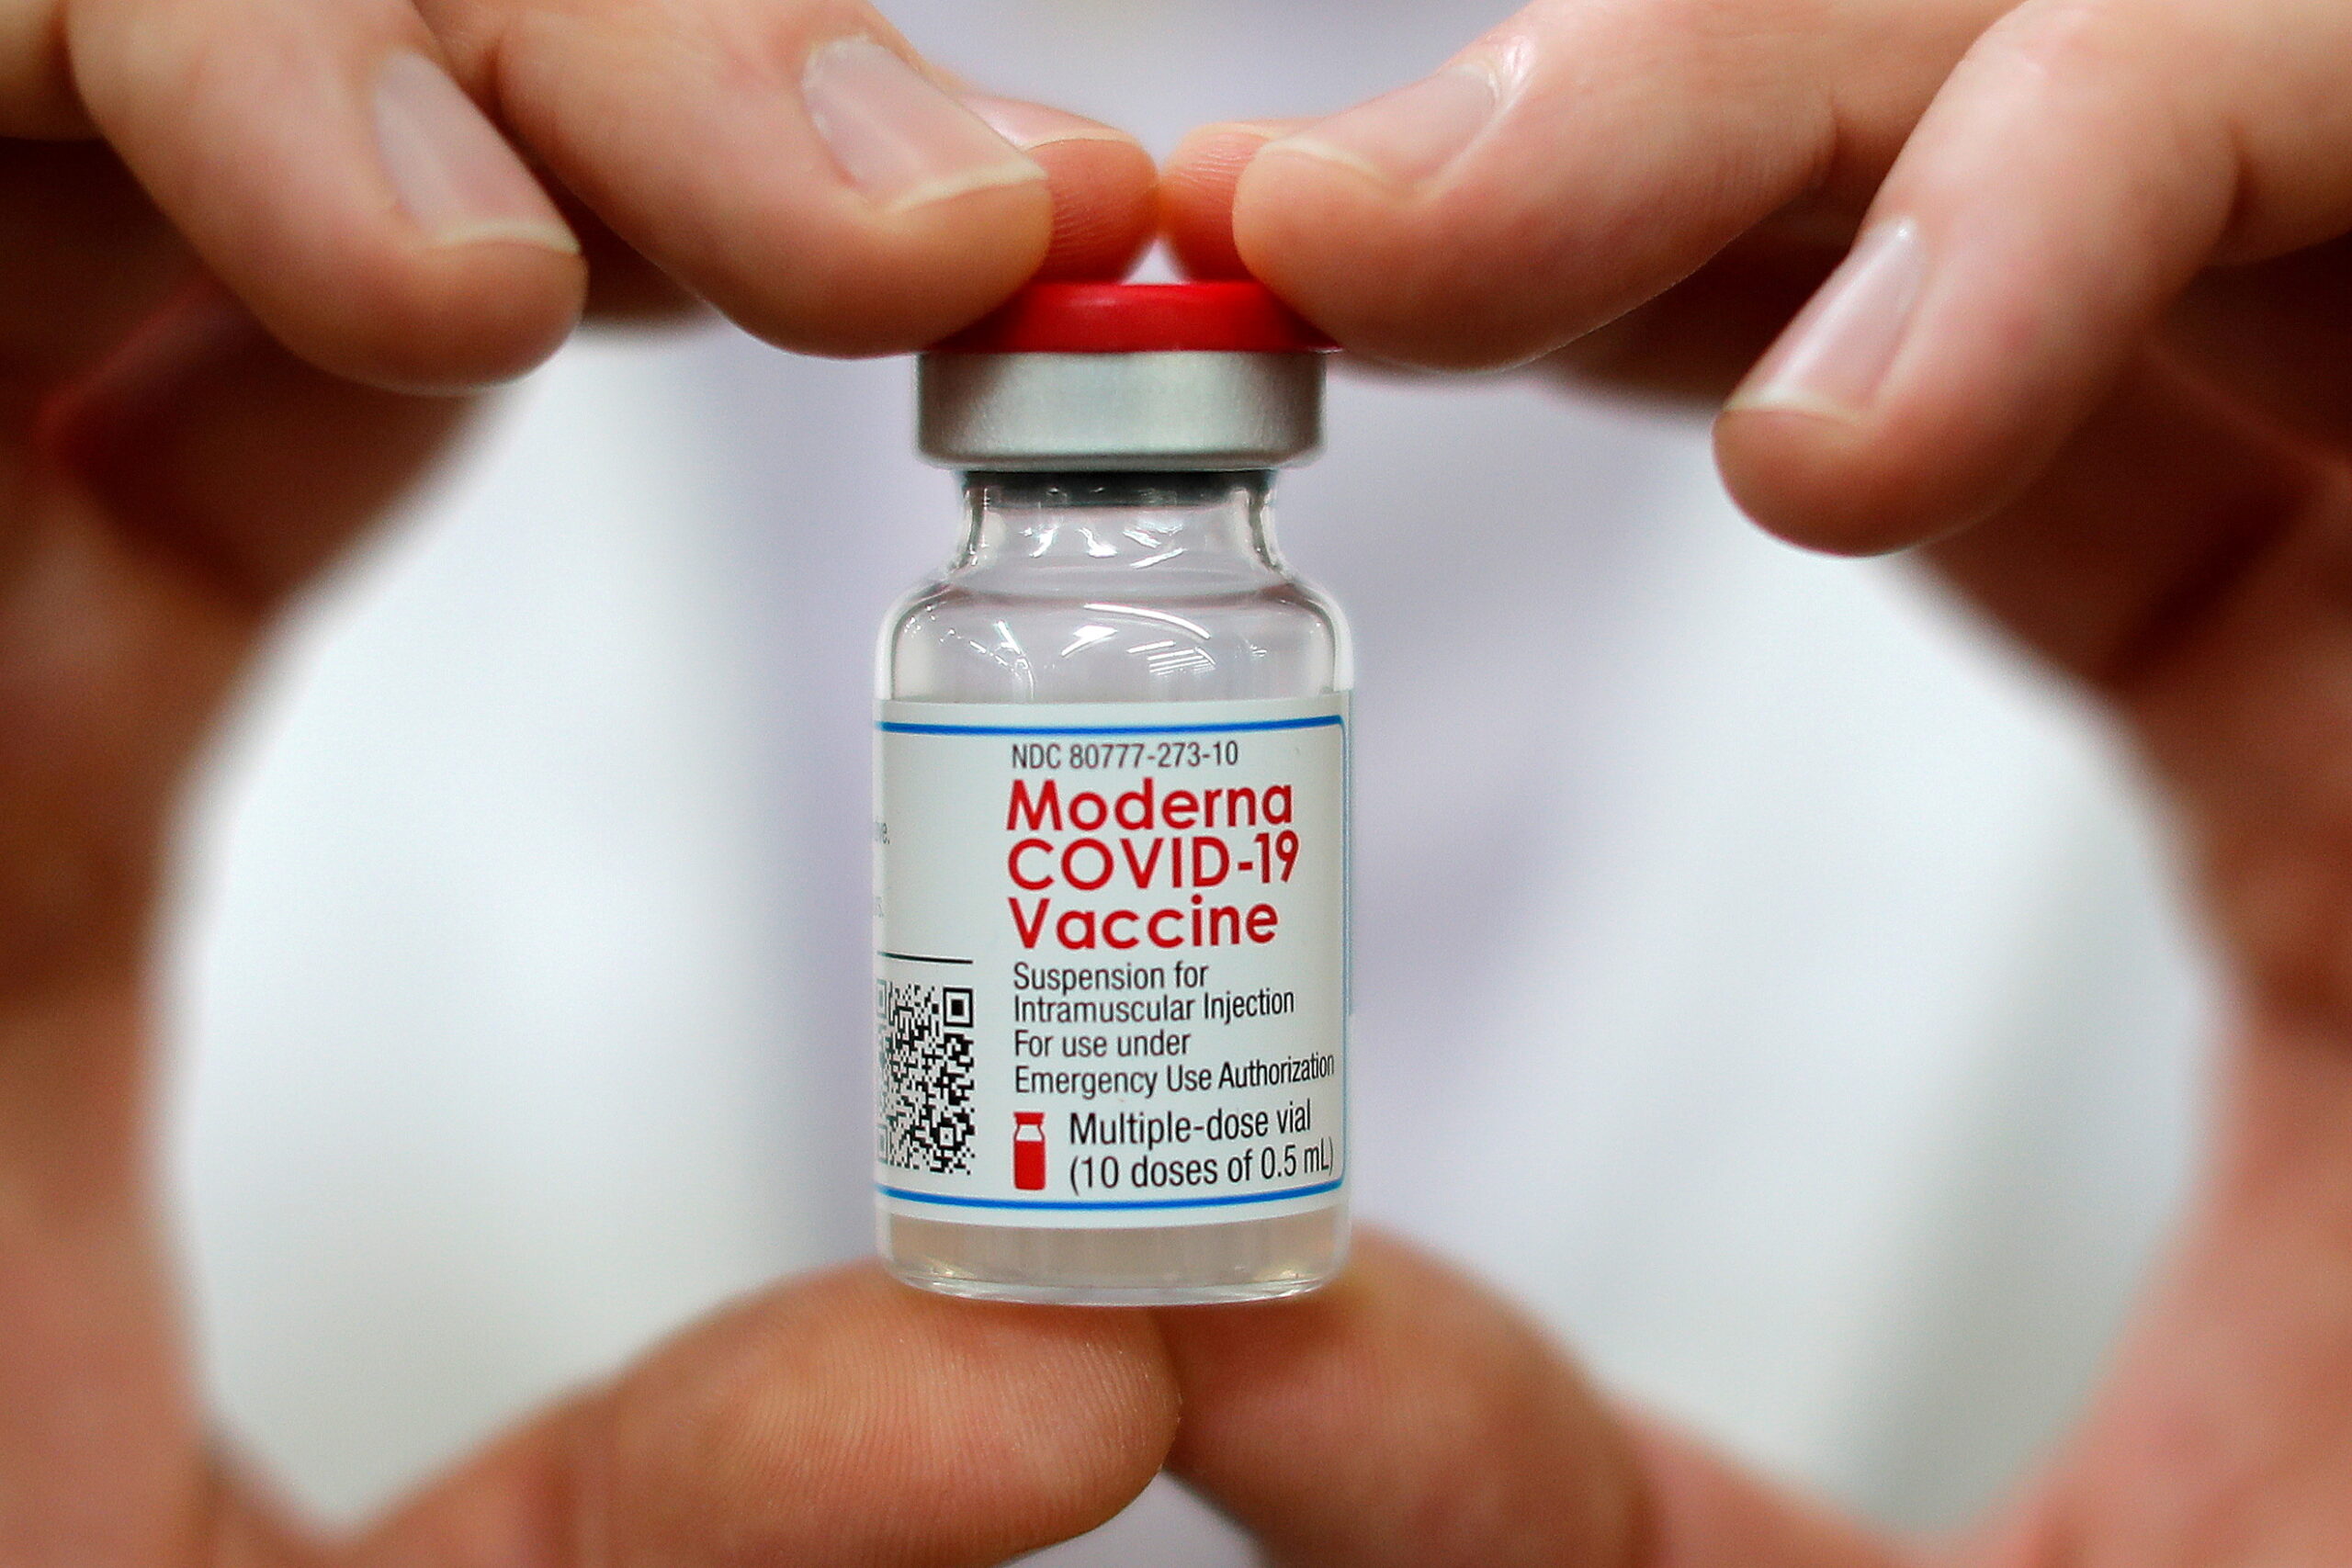 โมเดอร์นา ชี้ระดับภูมิคุ้มกันลดลง หลังฉีดวัคซีนมานาน ต้องมีเข็ม 3 – ต่างประเทศ